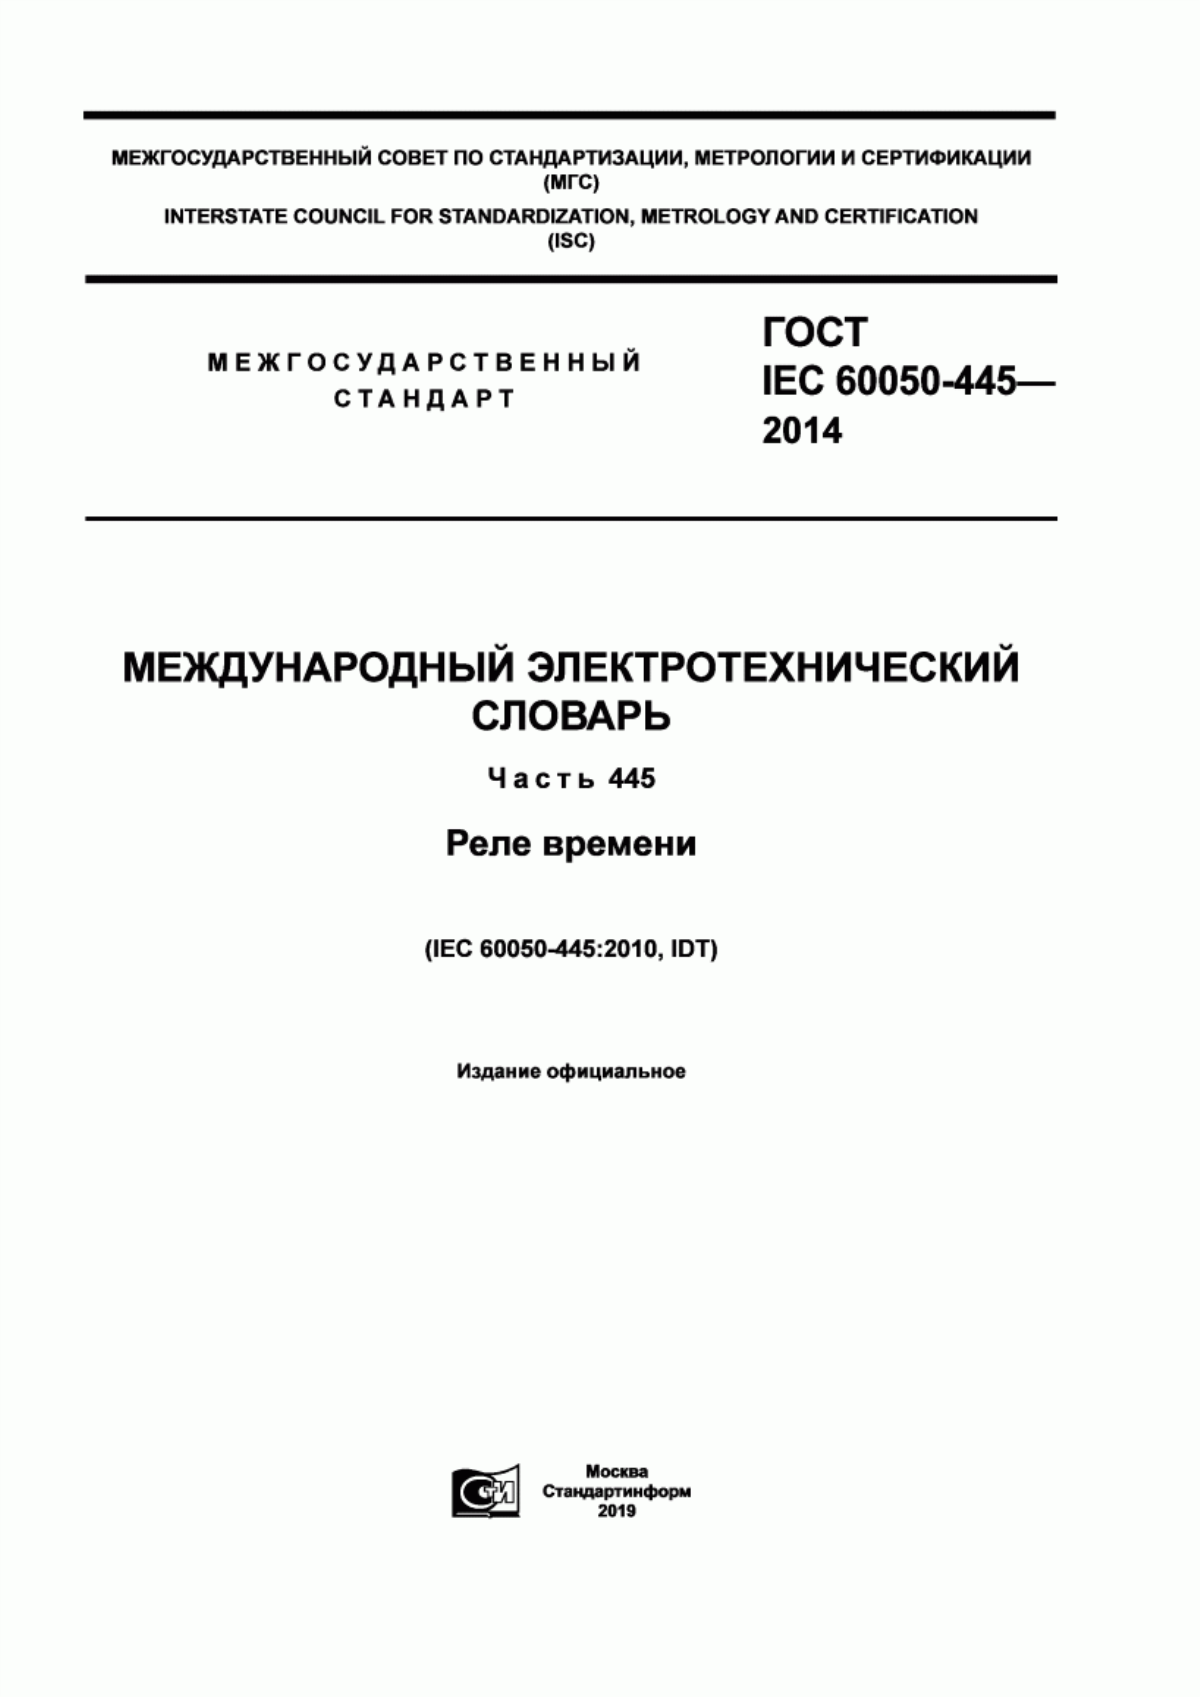 ГОСТ IEC 60050-445-2014 Международный электротехнический словарь. Часть 445. Реле времени